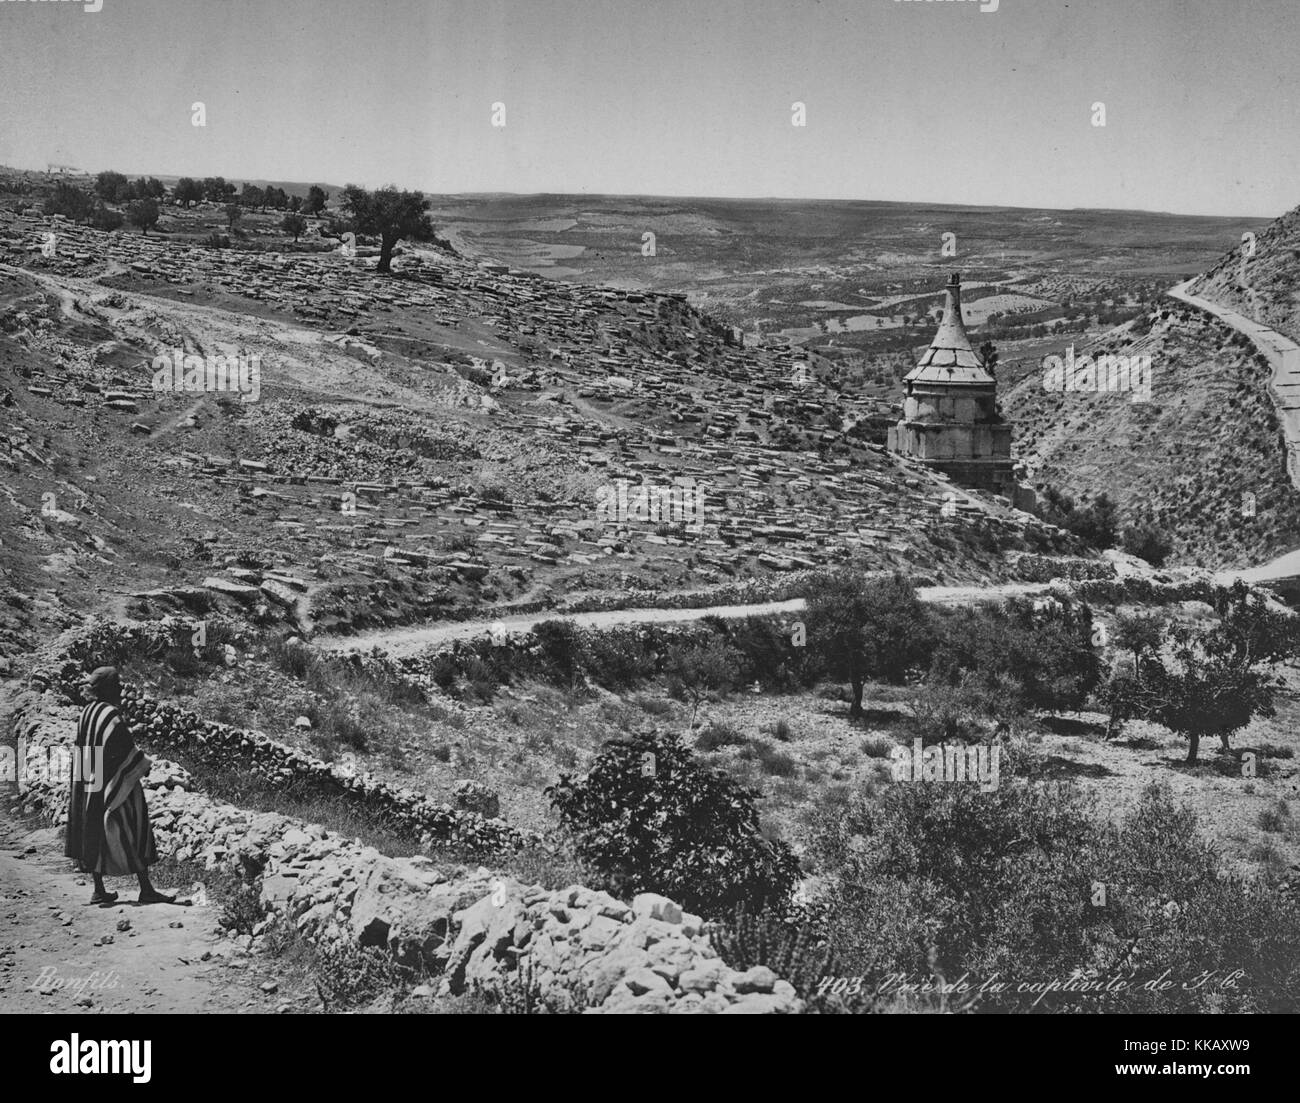 Un chemin de terre sinueux coupant à travers l'aride paysage rocheux, près de Jérusalem, Israël, 1900. À partir de la Bibliothèque publique de New York. Banque D'Images